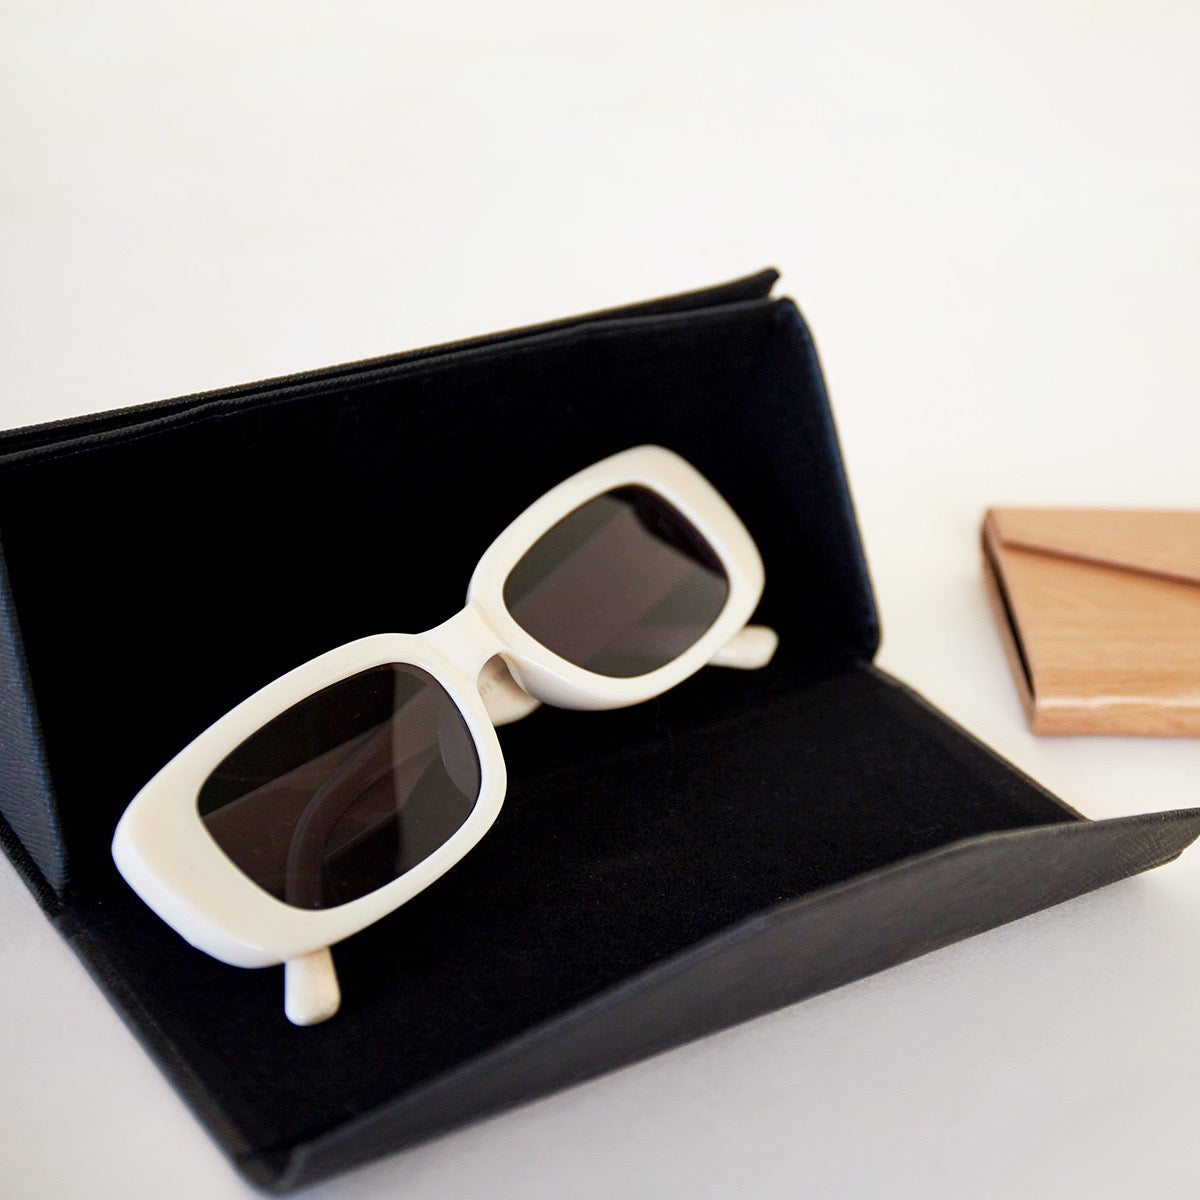 Sunglasses case